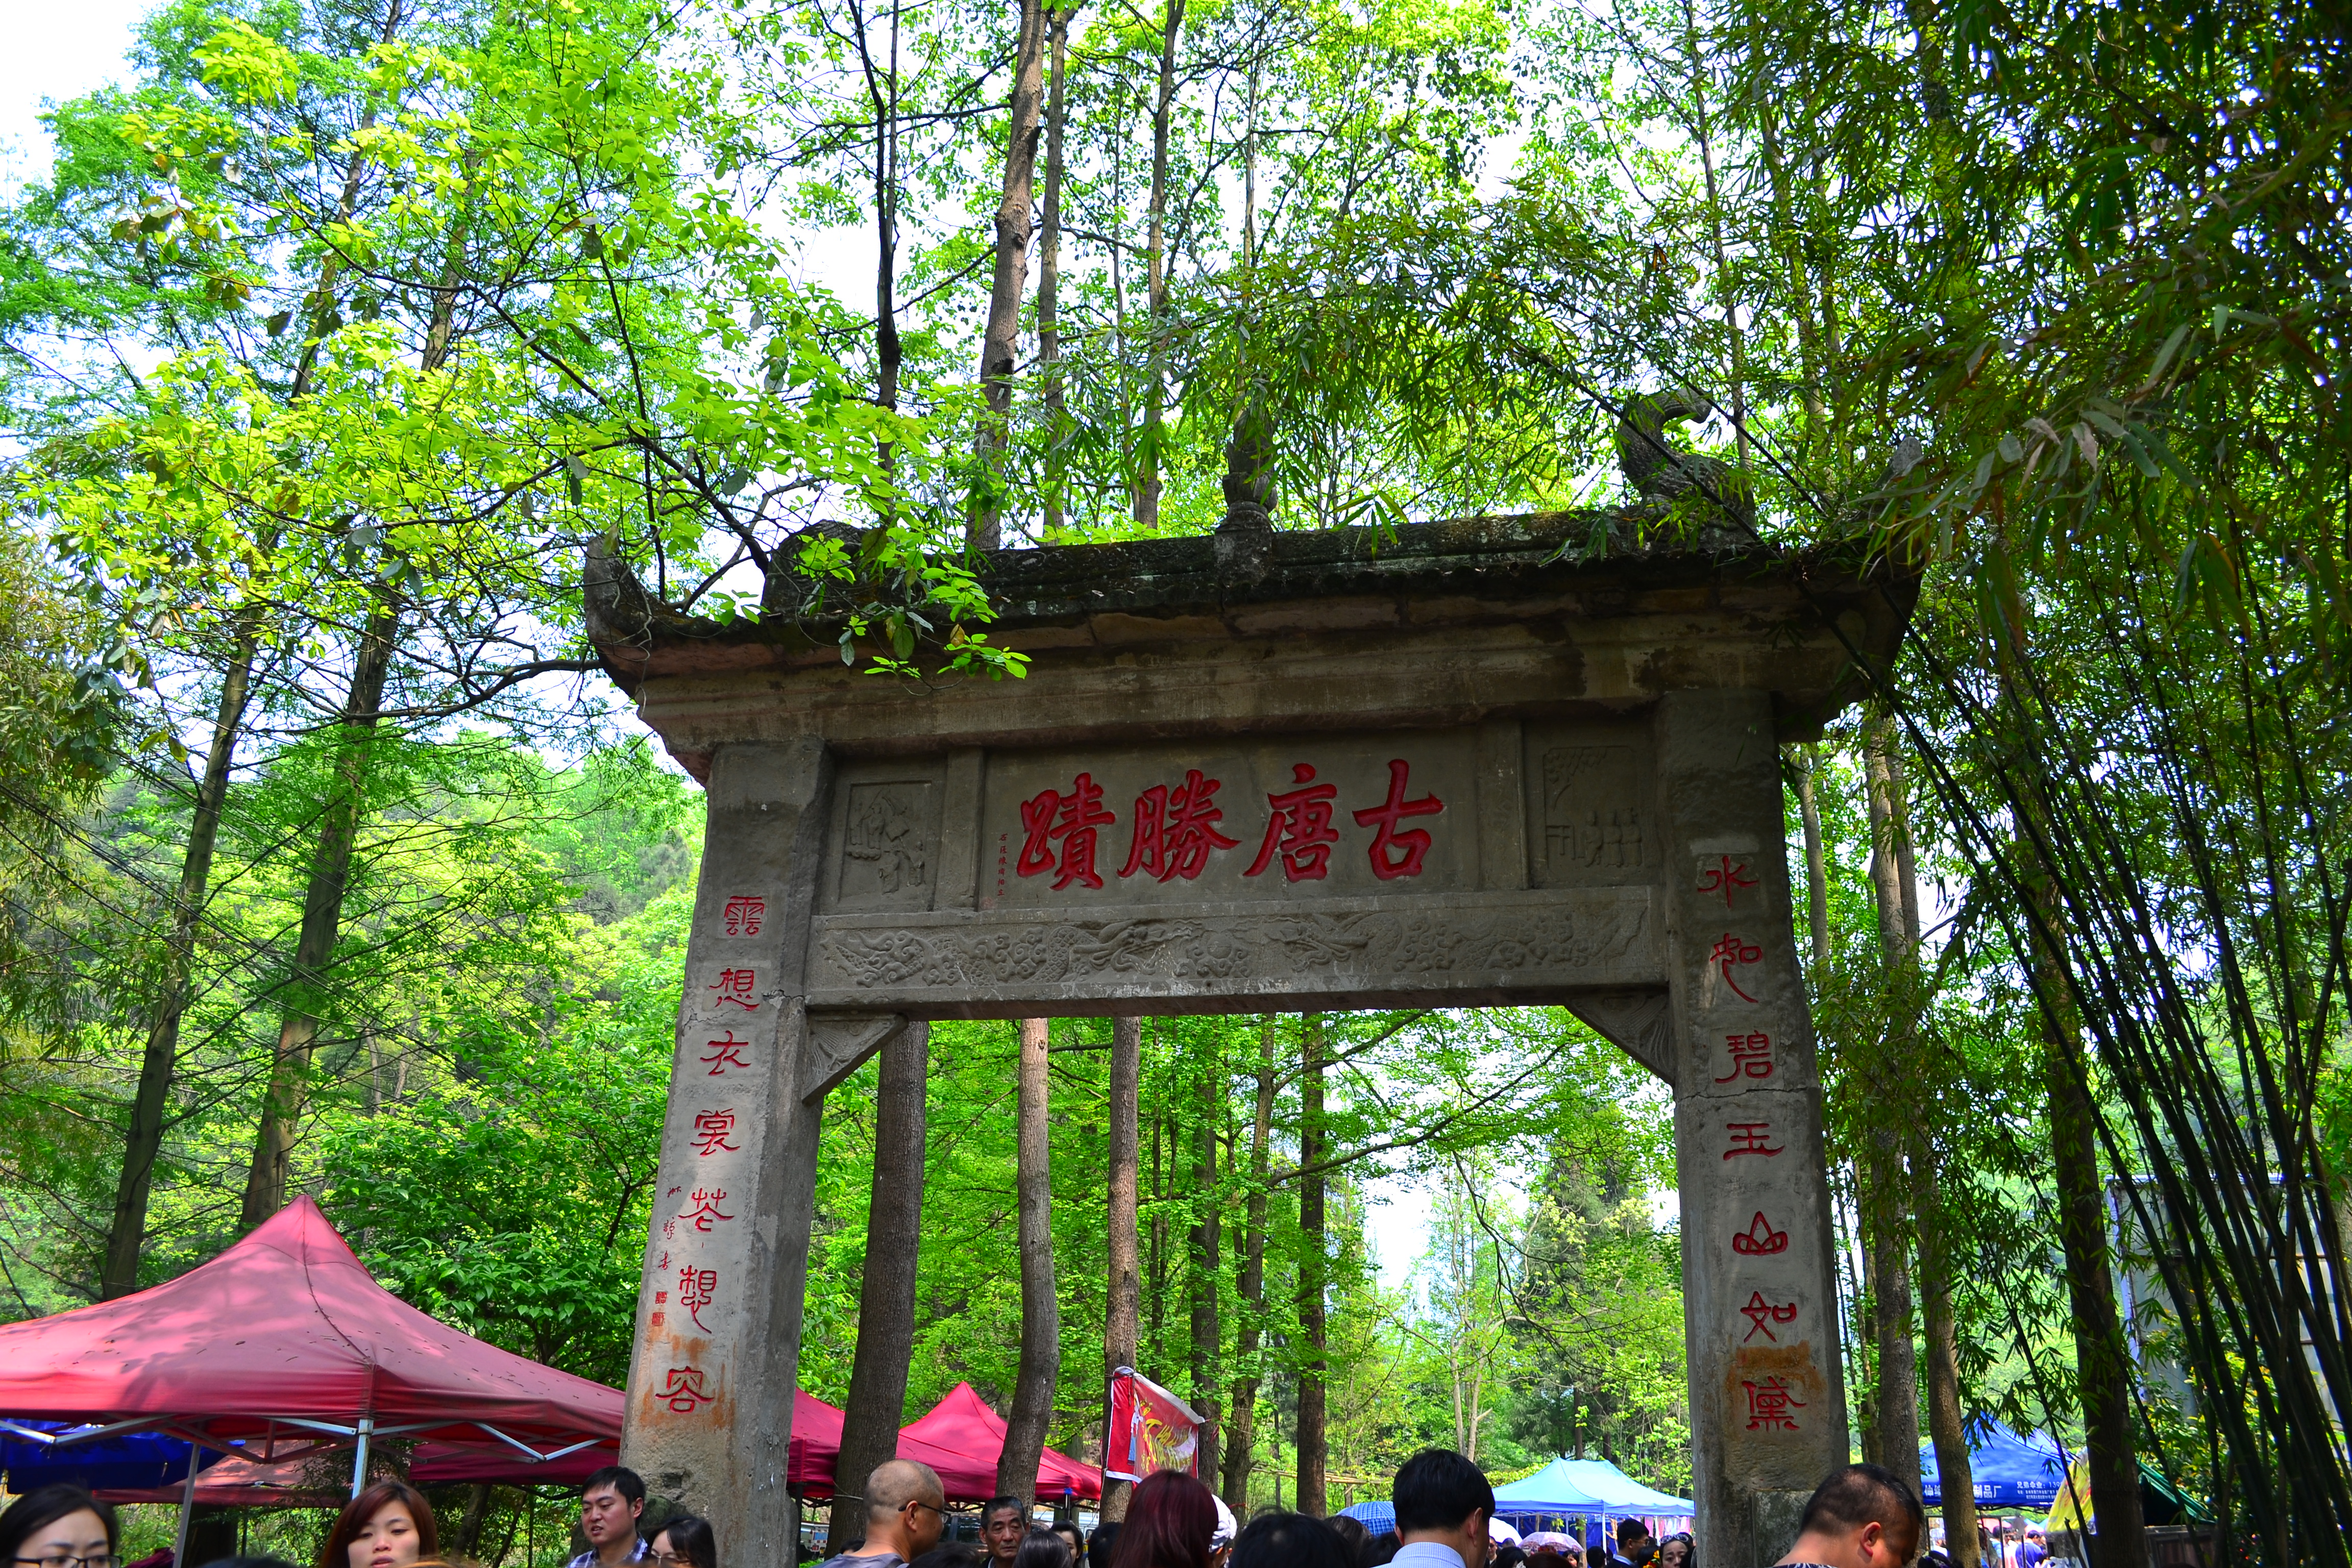 丹景山为中国天彭牡丹的发源地，经常会搞一些活动门票淡季10元旺季30元